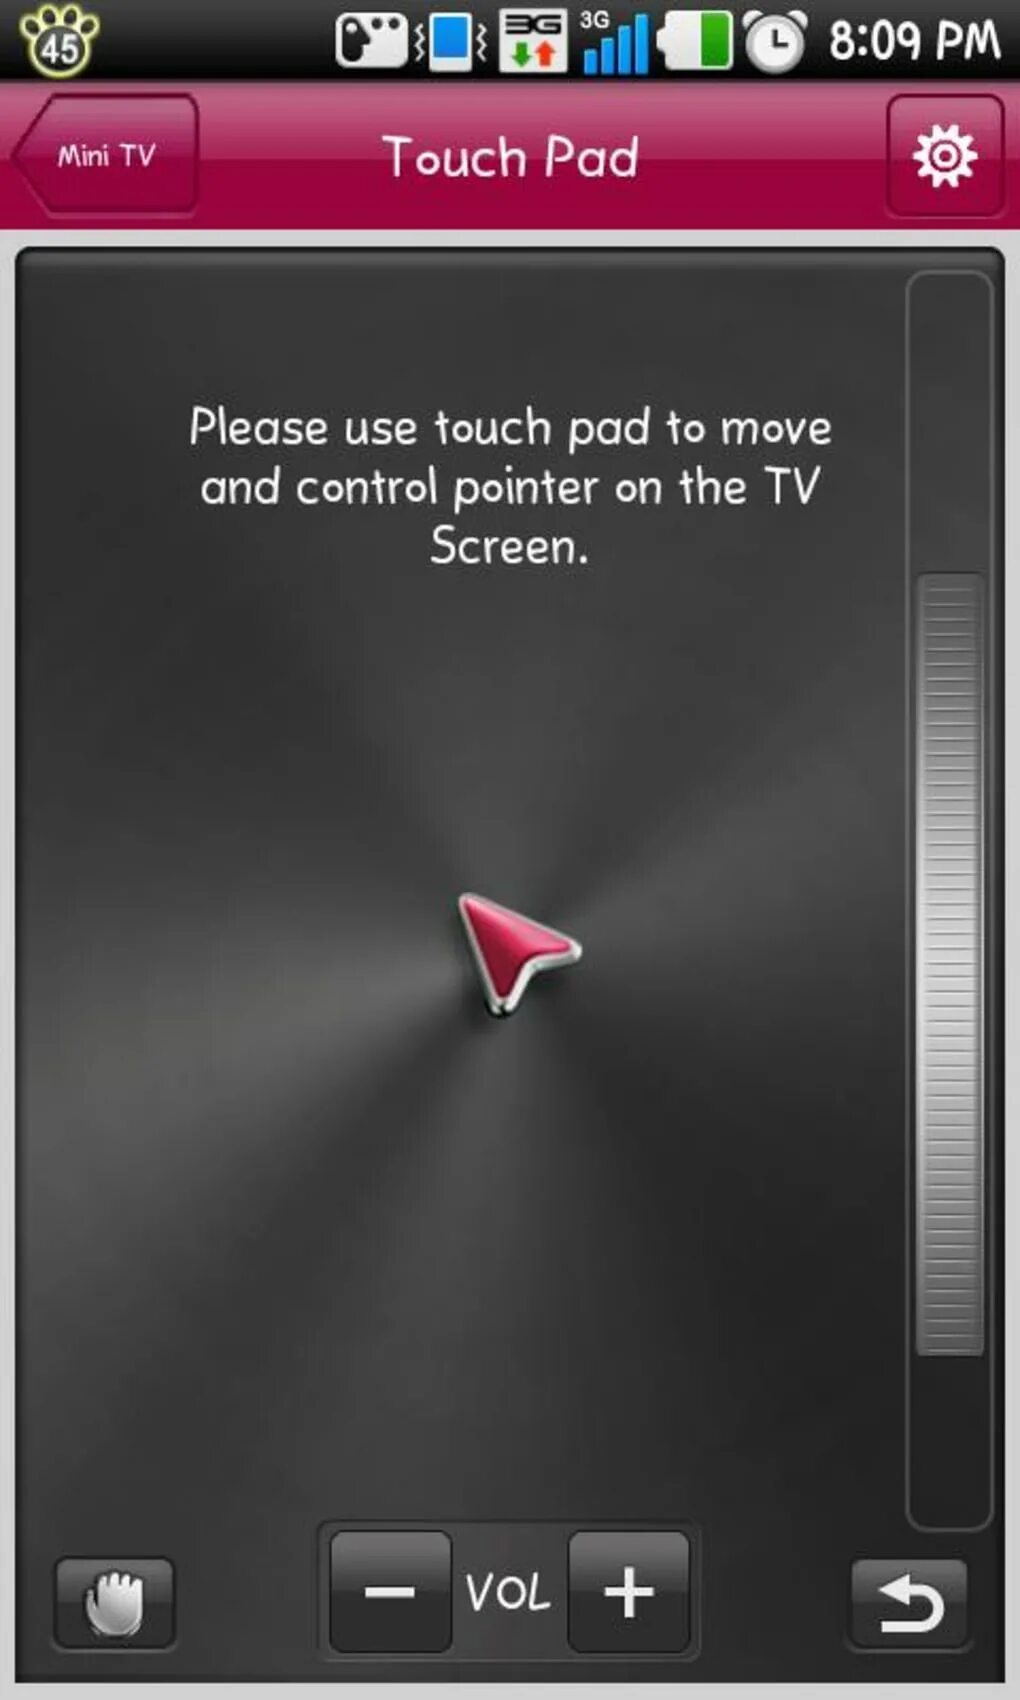 Пульт lg на телефоне андроид. LG TV Remote приложение. Программы для управления телевизором с телефона андроид. Управление телевизором LG со смартфона. Прога пульт для андроид ТВ.